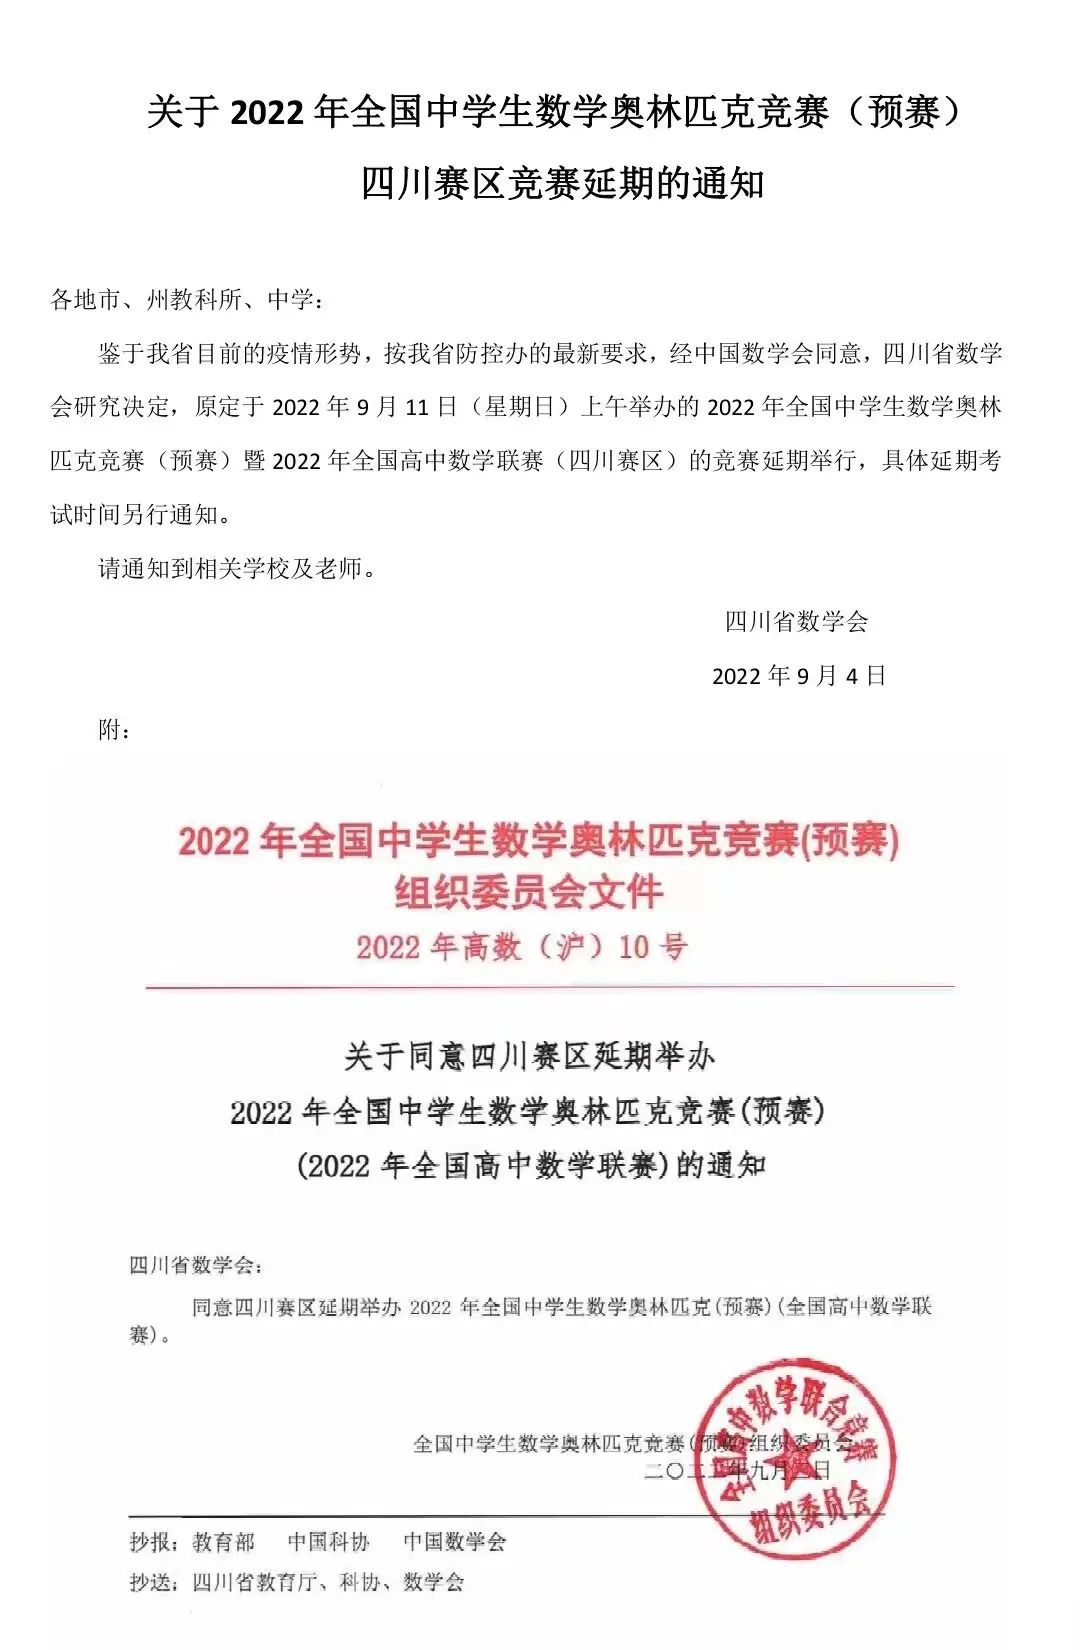 通知！四川、天津、内蒙、贵州4省2022年数学联赛延期